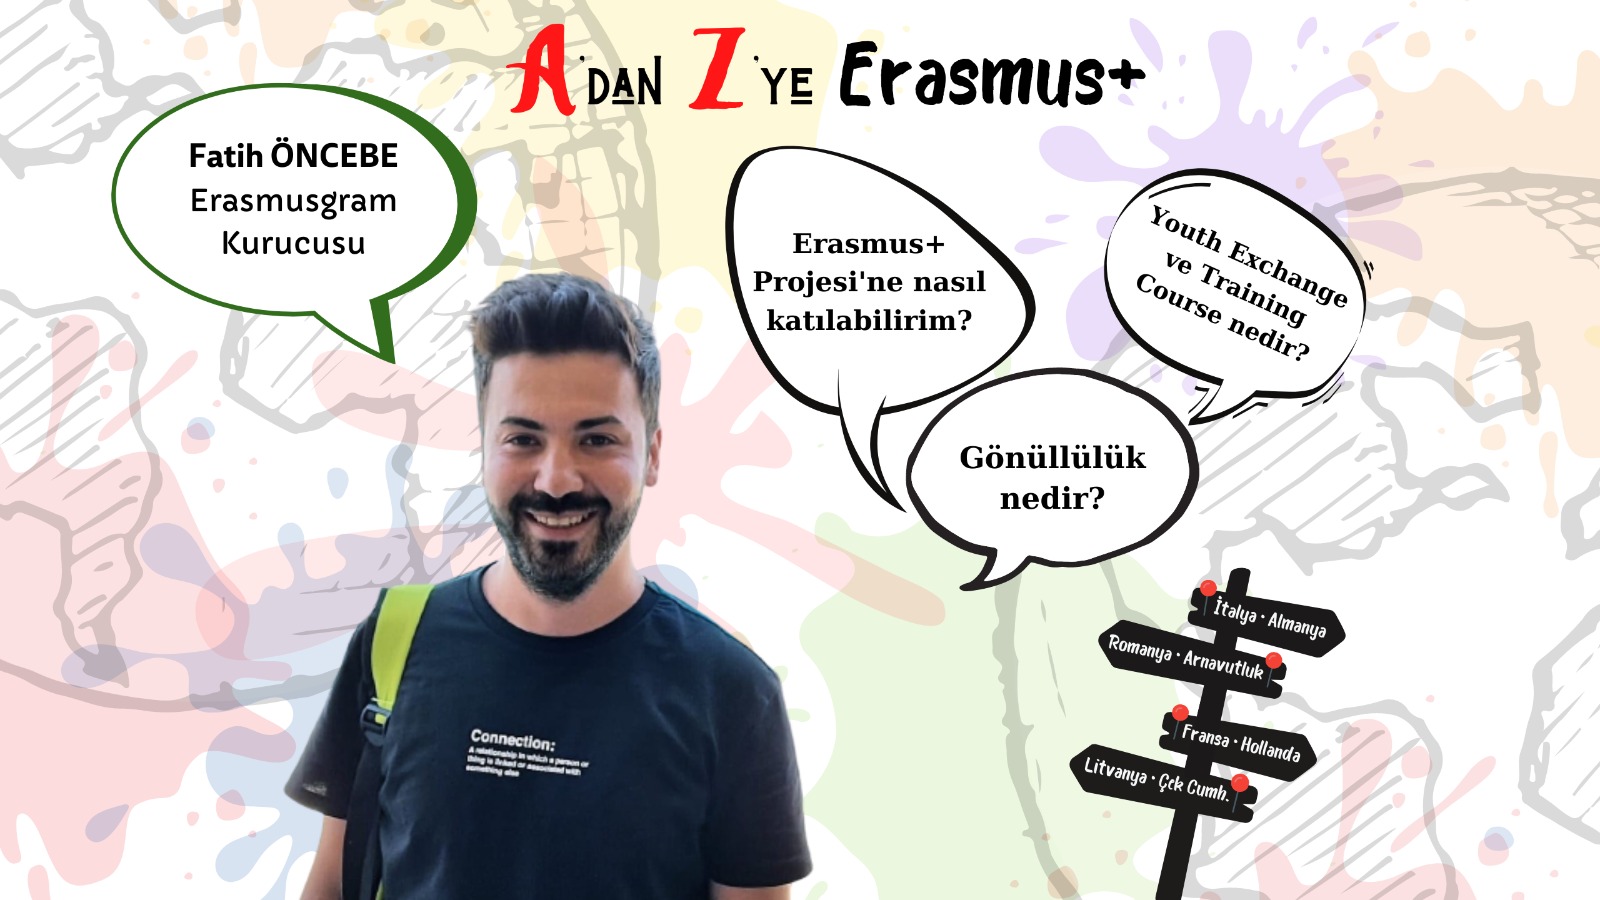  A’dan Z’ye Erasmus+ “Erasmusgram” ile Röportaj